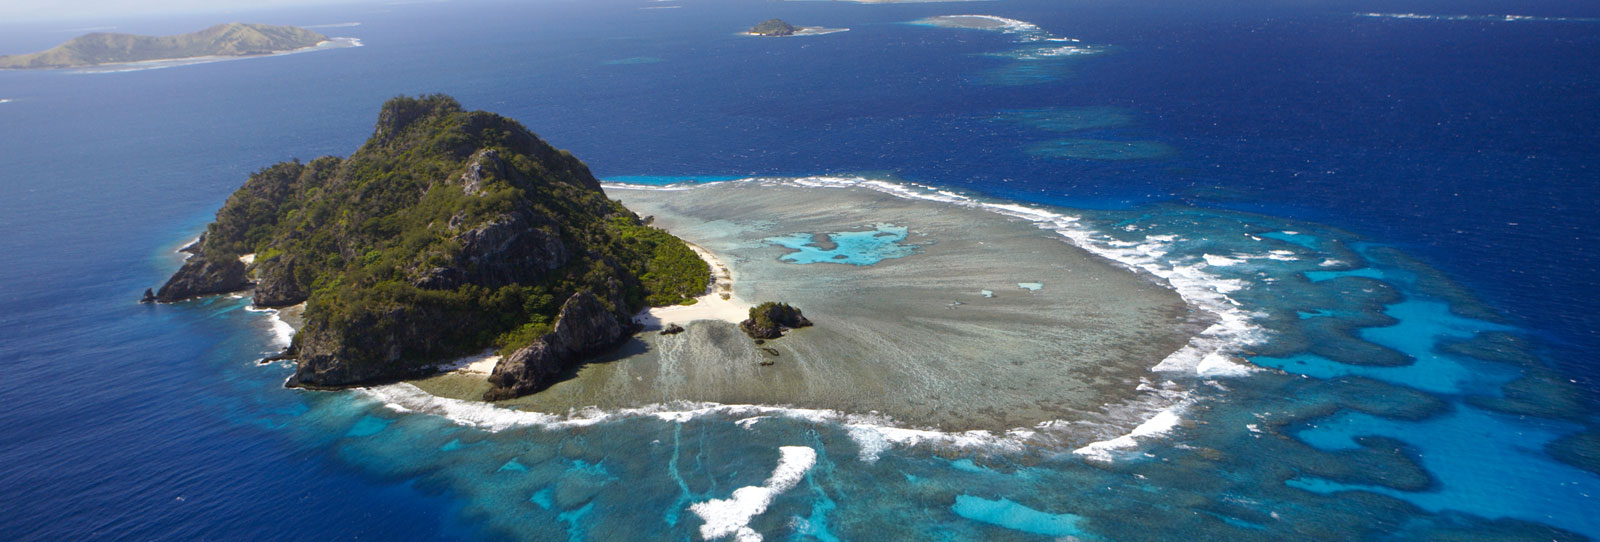 10 gute Gründe für einen Urlaub auf Fiji - Reisebine